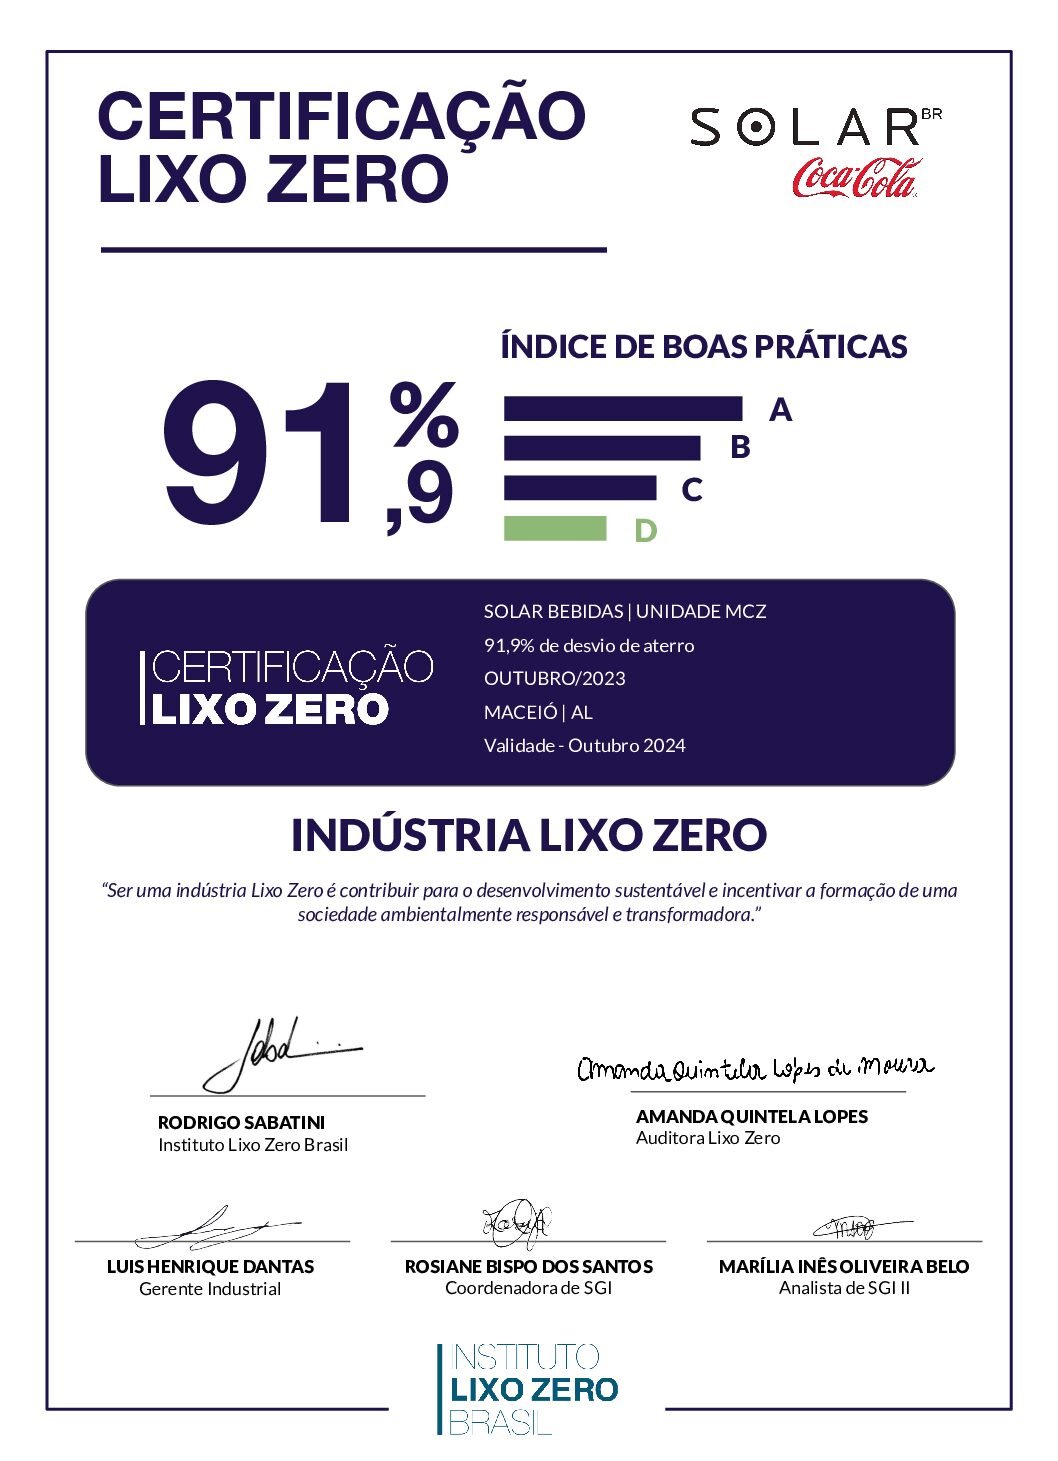 ASSINADO CertificaçãoLixoZero_Solar_MCZ_AL_Outubro_2023